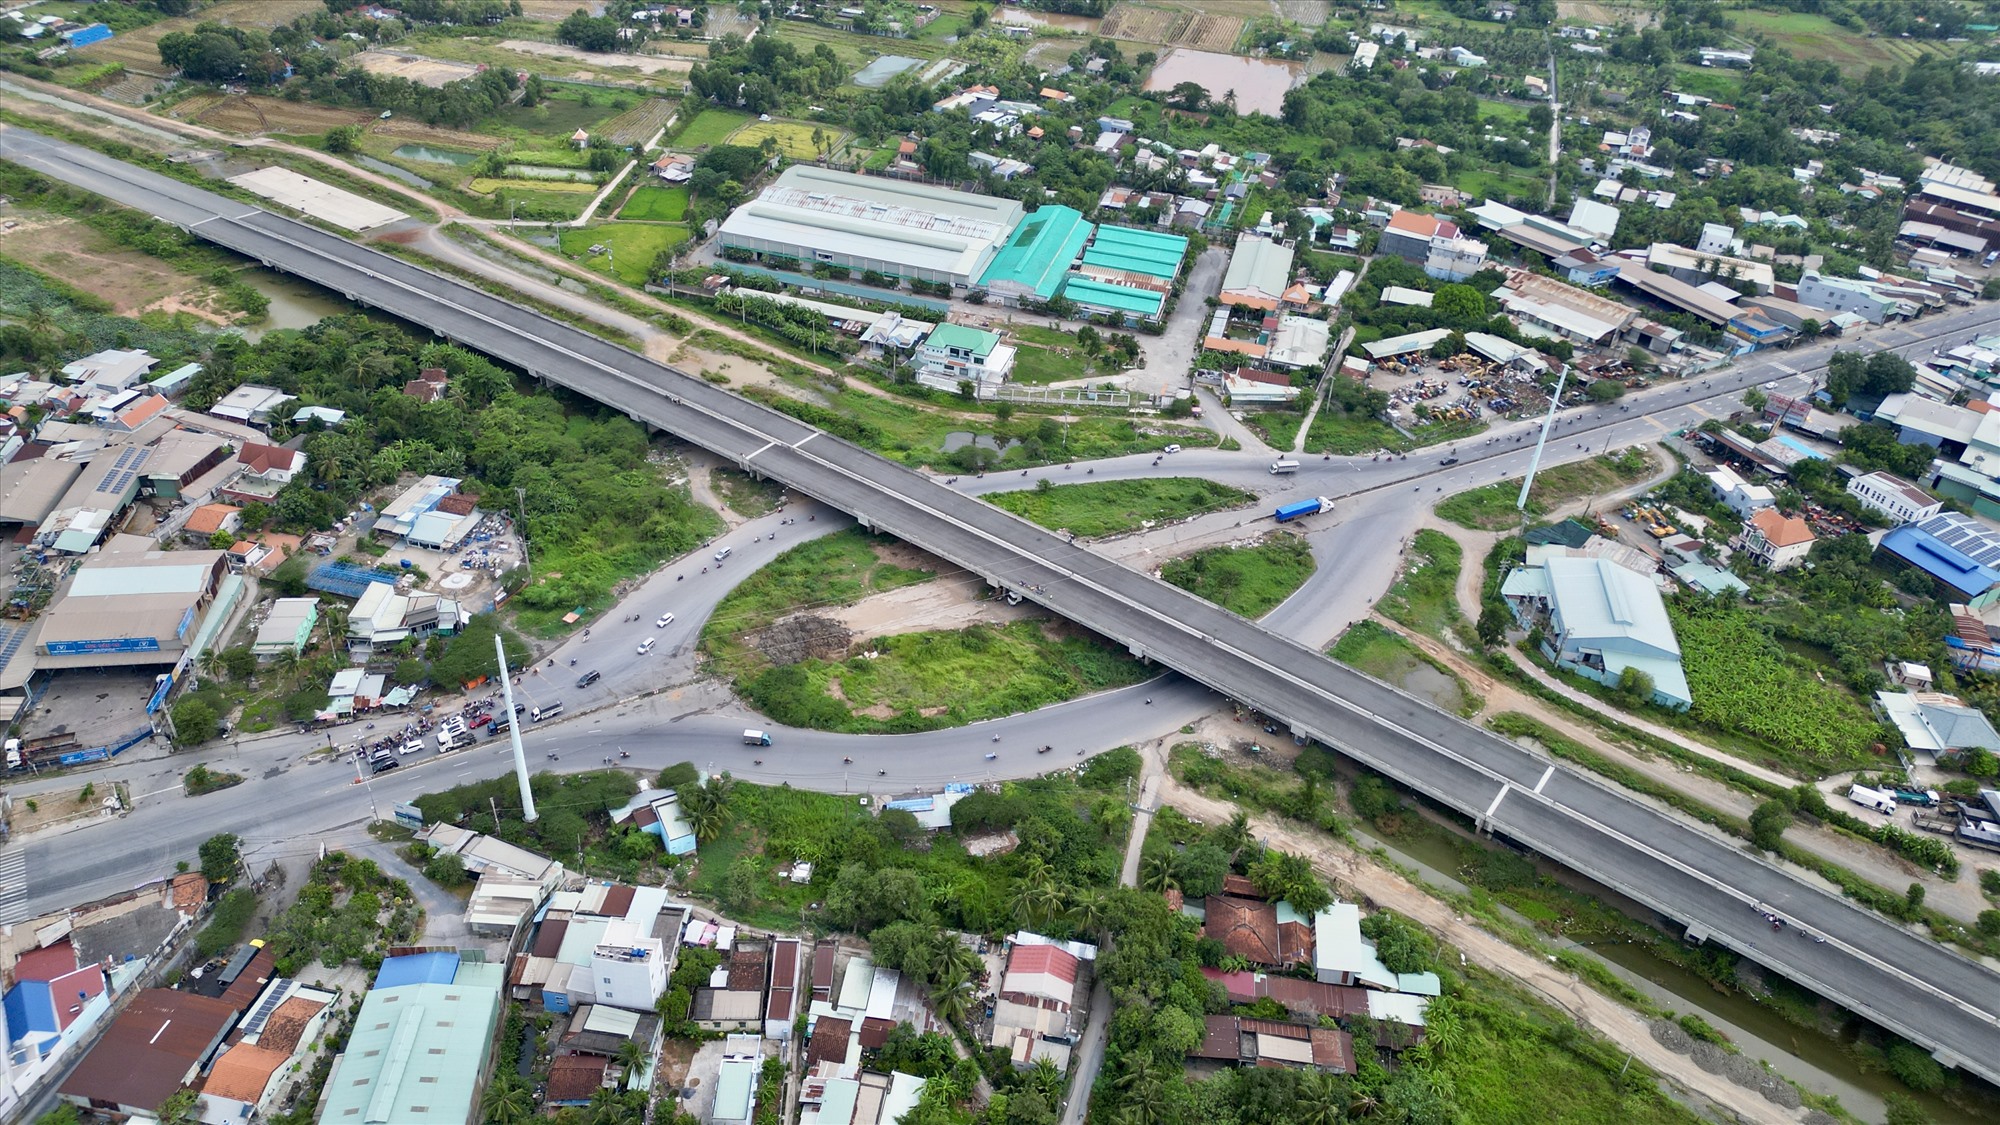 Cách đó khoảng 5 km, nút giao với quốc lộ 1A (huyện Bình Chánh, TPHCM) được thiết kế gồm cầu vượt, vòng xoay. Hiện, đường cao tốc đã hình thành nhưng đường kết nối qua đây chưa xong.